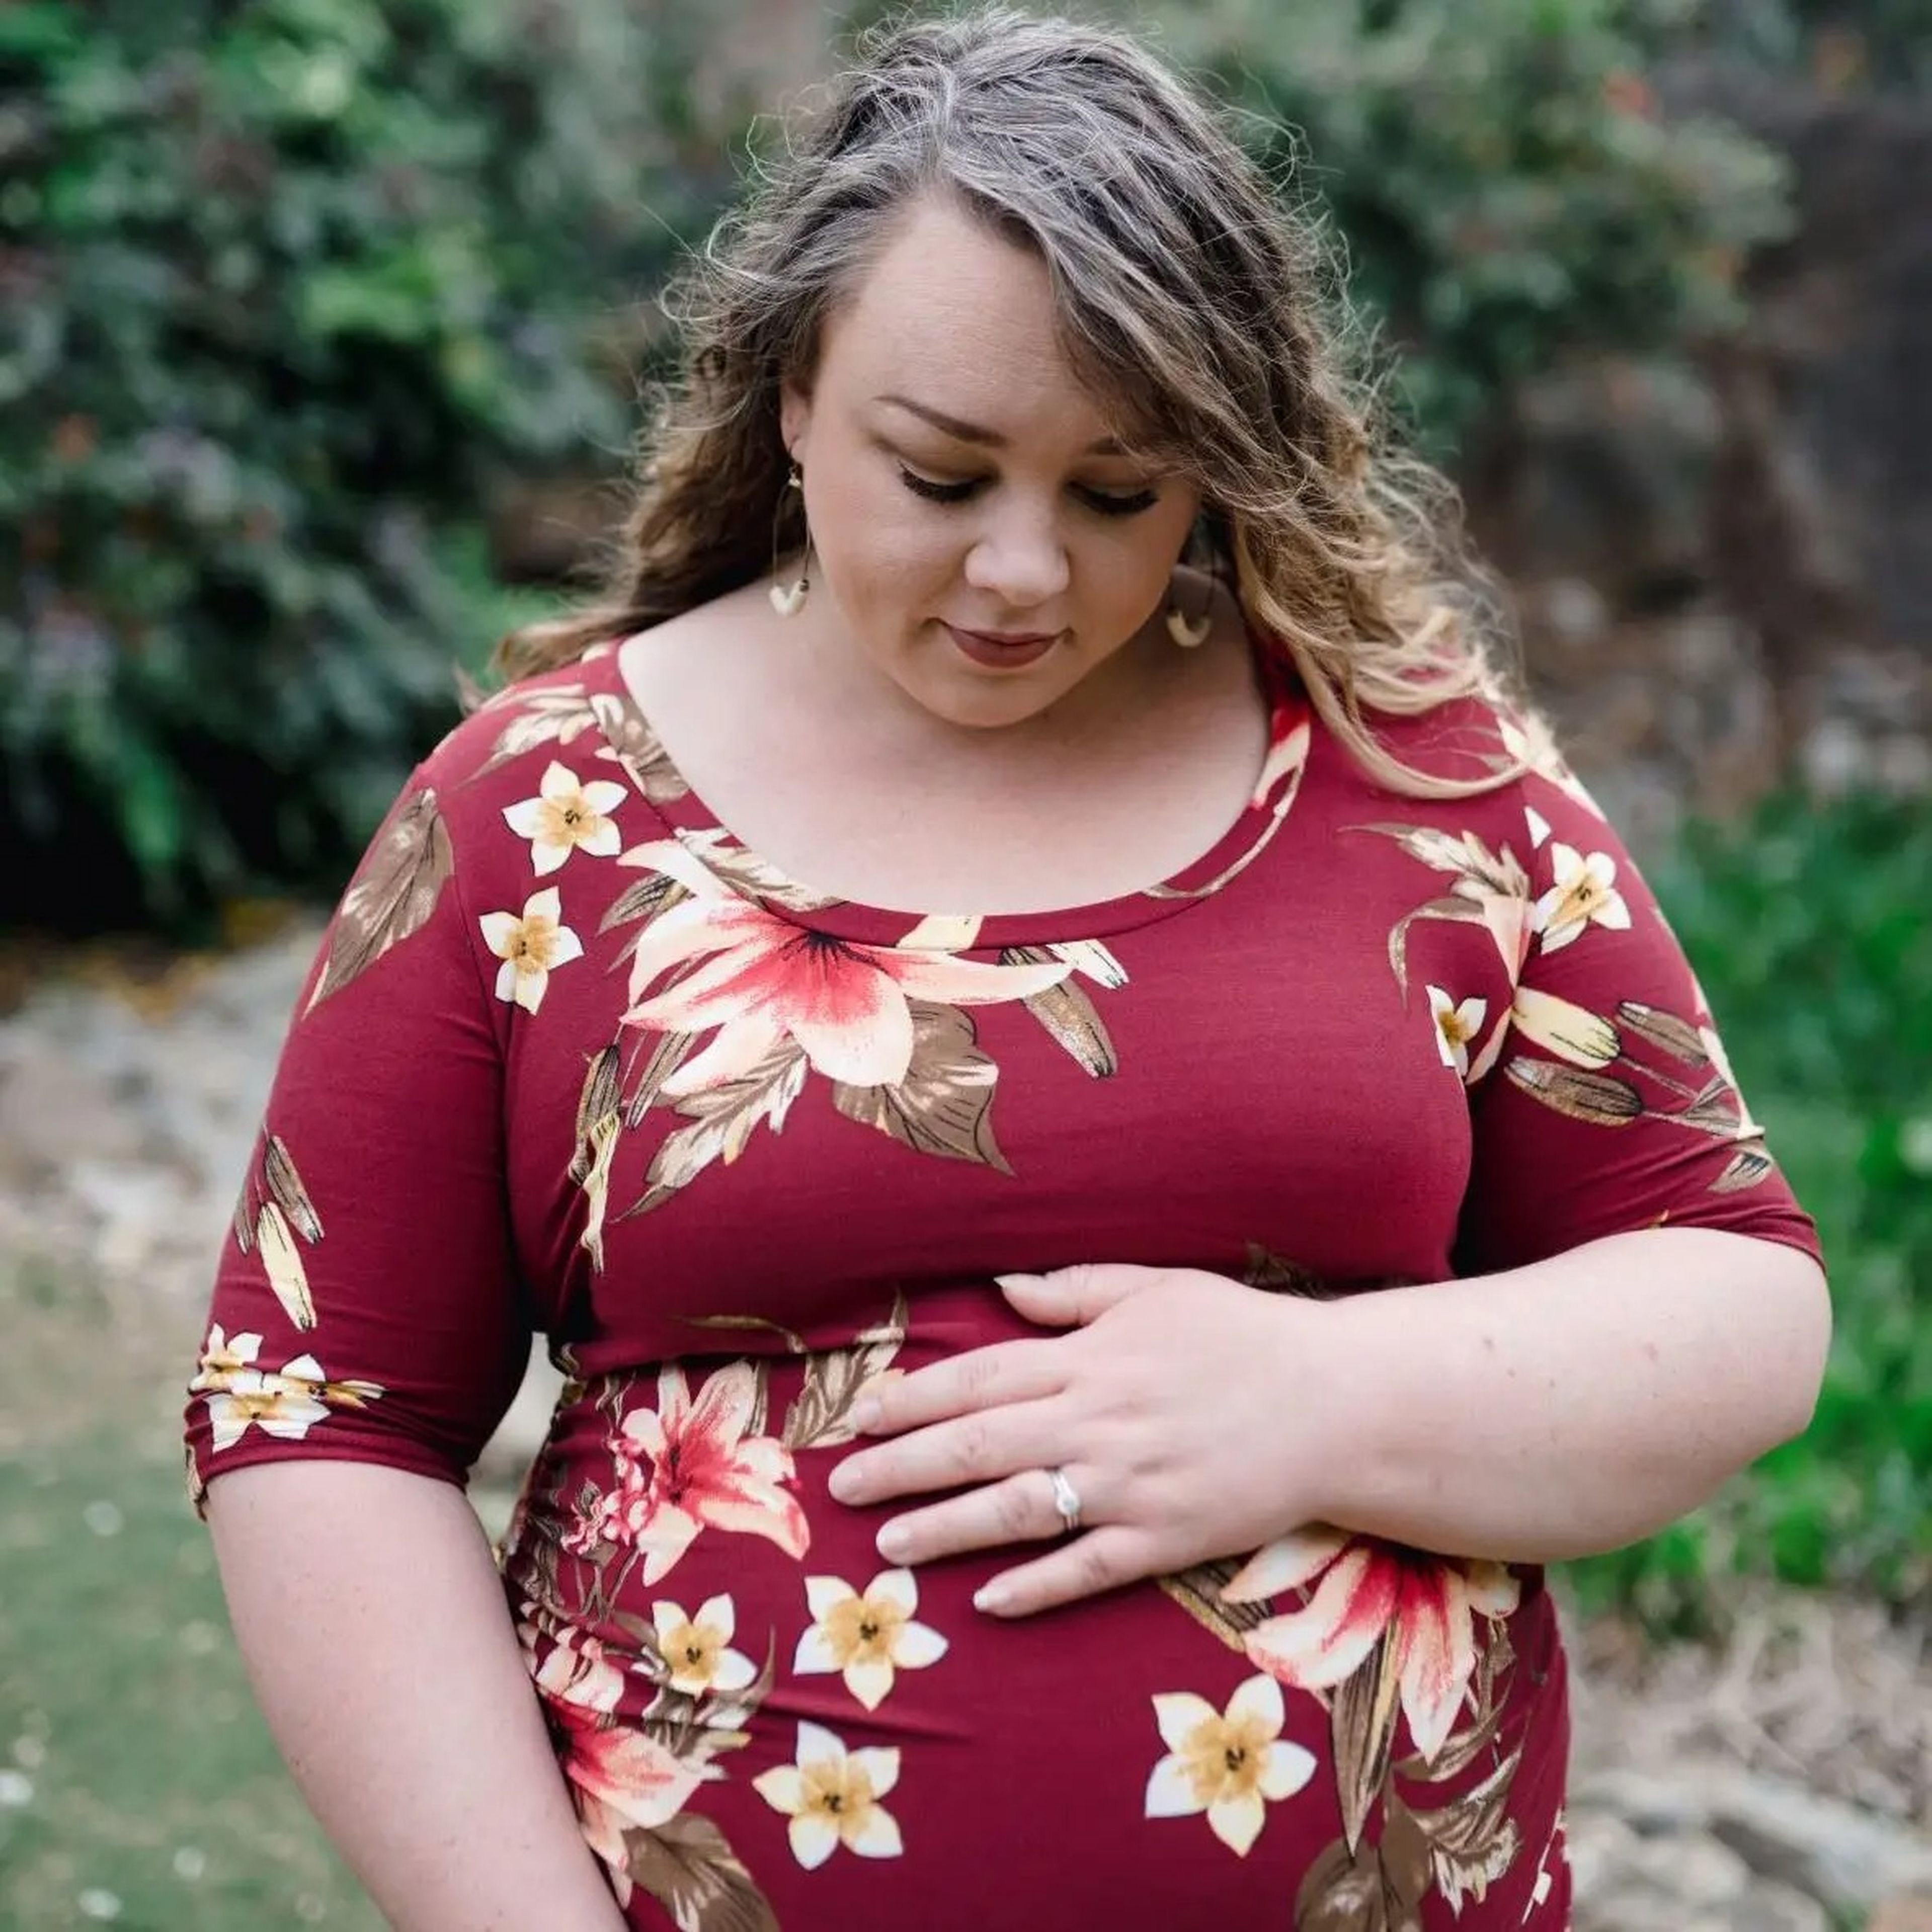 Erin Basinger cree que la gordofobia contribuyó a retrasar su diagnóstico de cáncer.